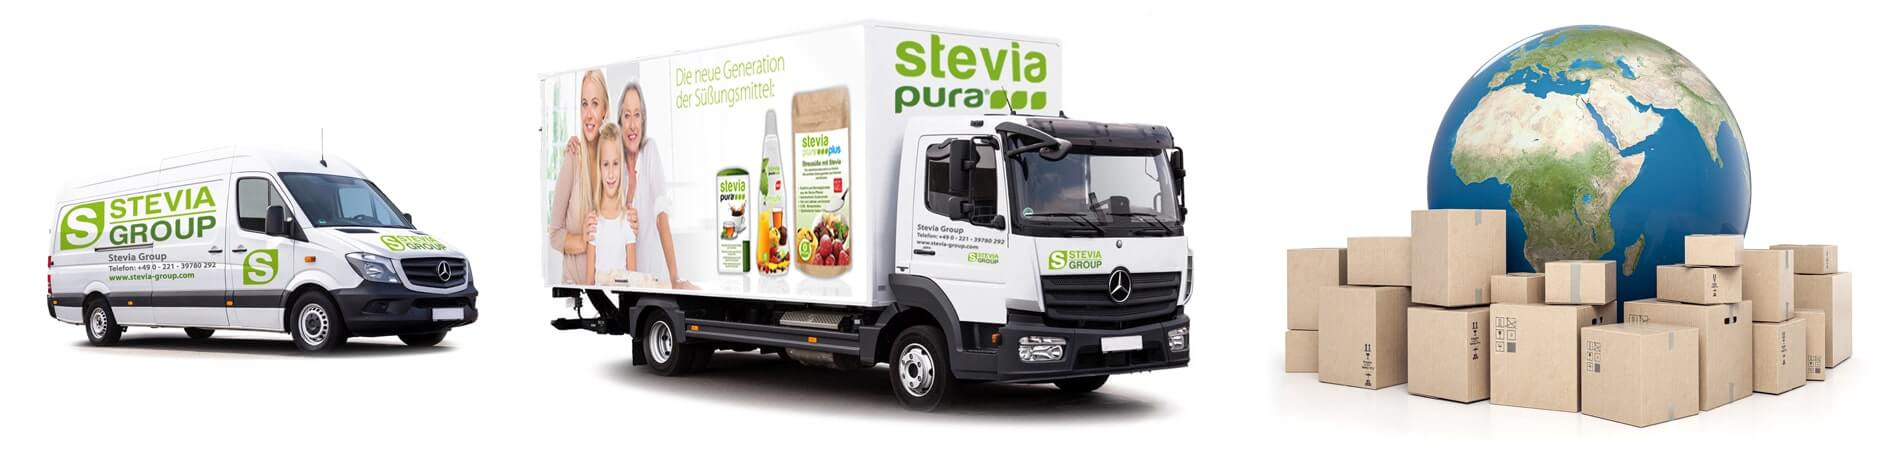 Versandkosten Stevia Group steviapura stevia kaufen